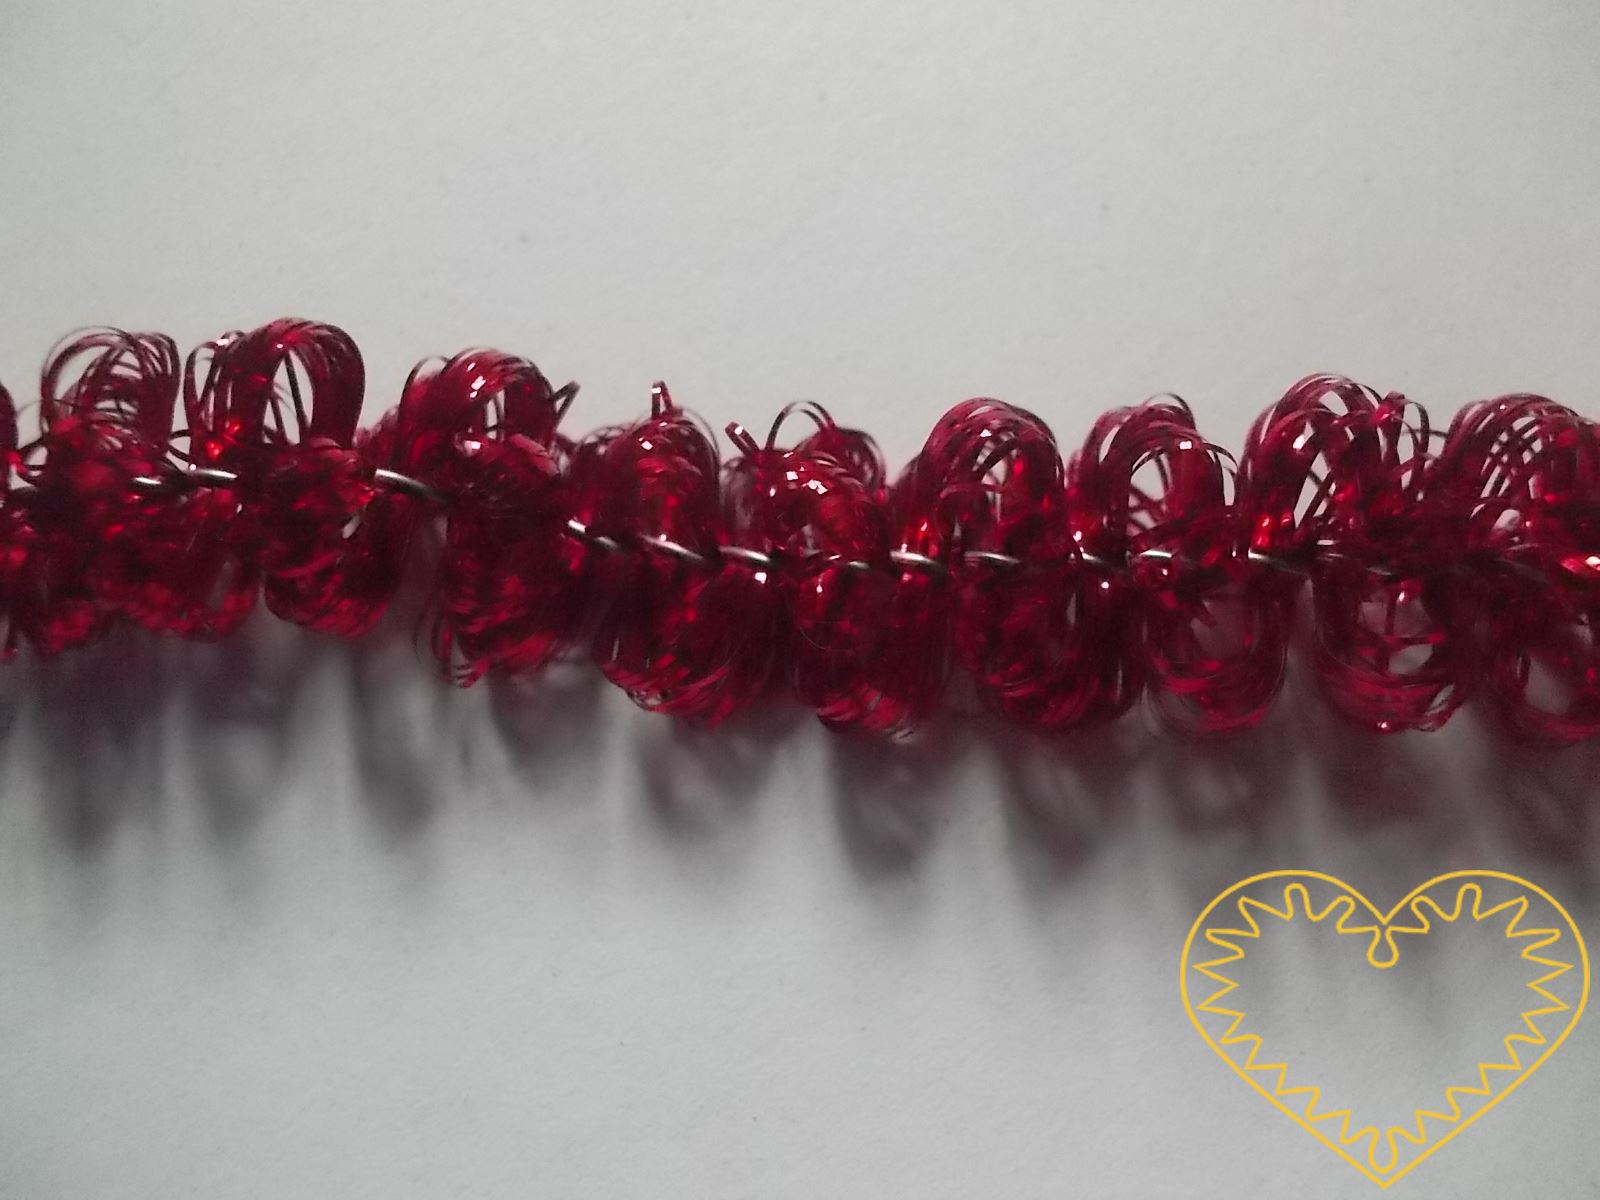 Červená žinylka s drátkem Ø 1 cm, délka 4 m. Díky tomu, že kostru tvoří drátek, dá se tato žinylka různě ohýbat a dobře drží tvar. Najde široké uplatnění při nejrůznějších tvůrčích činnostech.